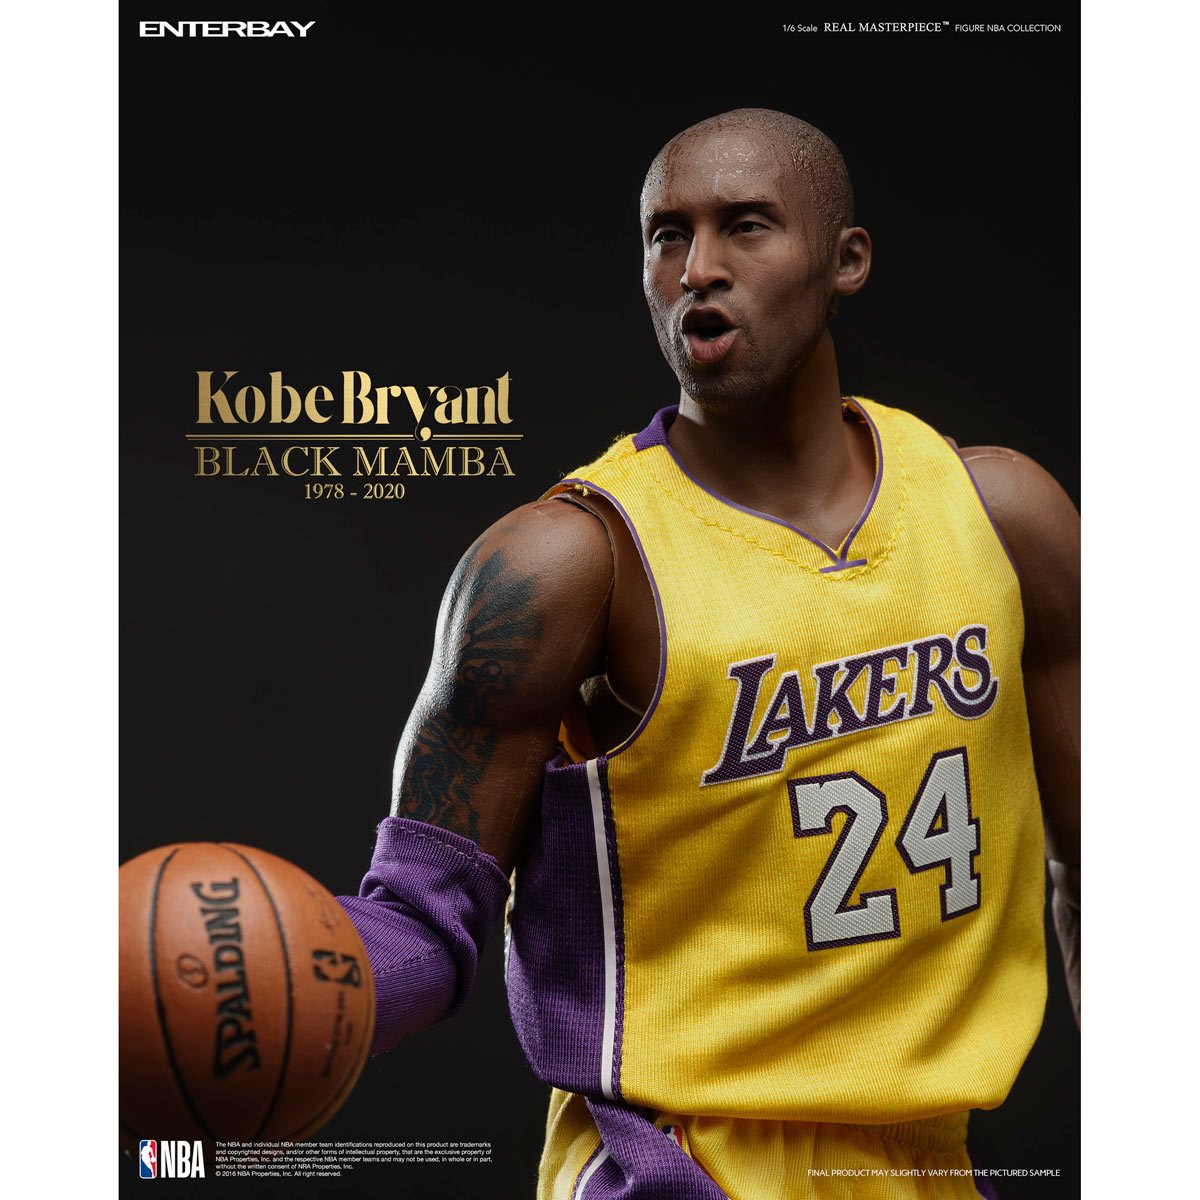 Kobe Bryant  Kobe bryant pictures, Kobe bryant, Kobe bryant black mamba